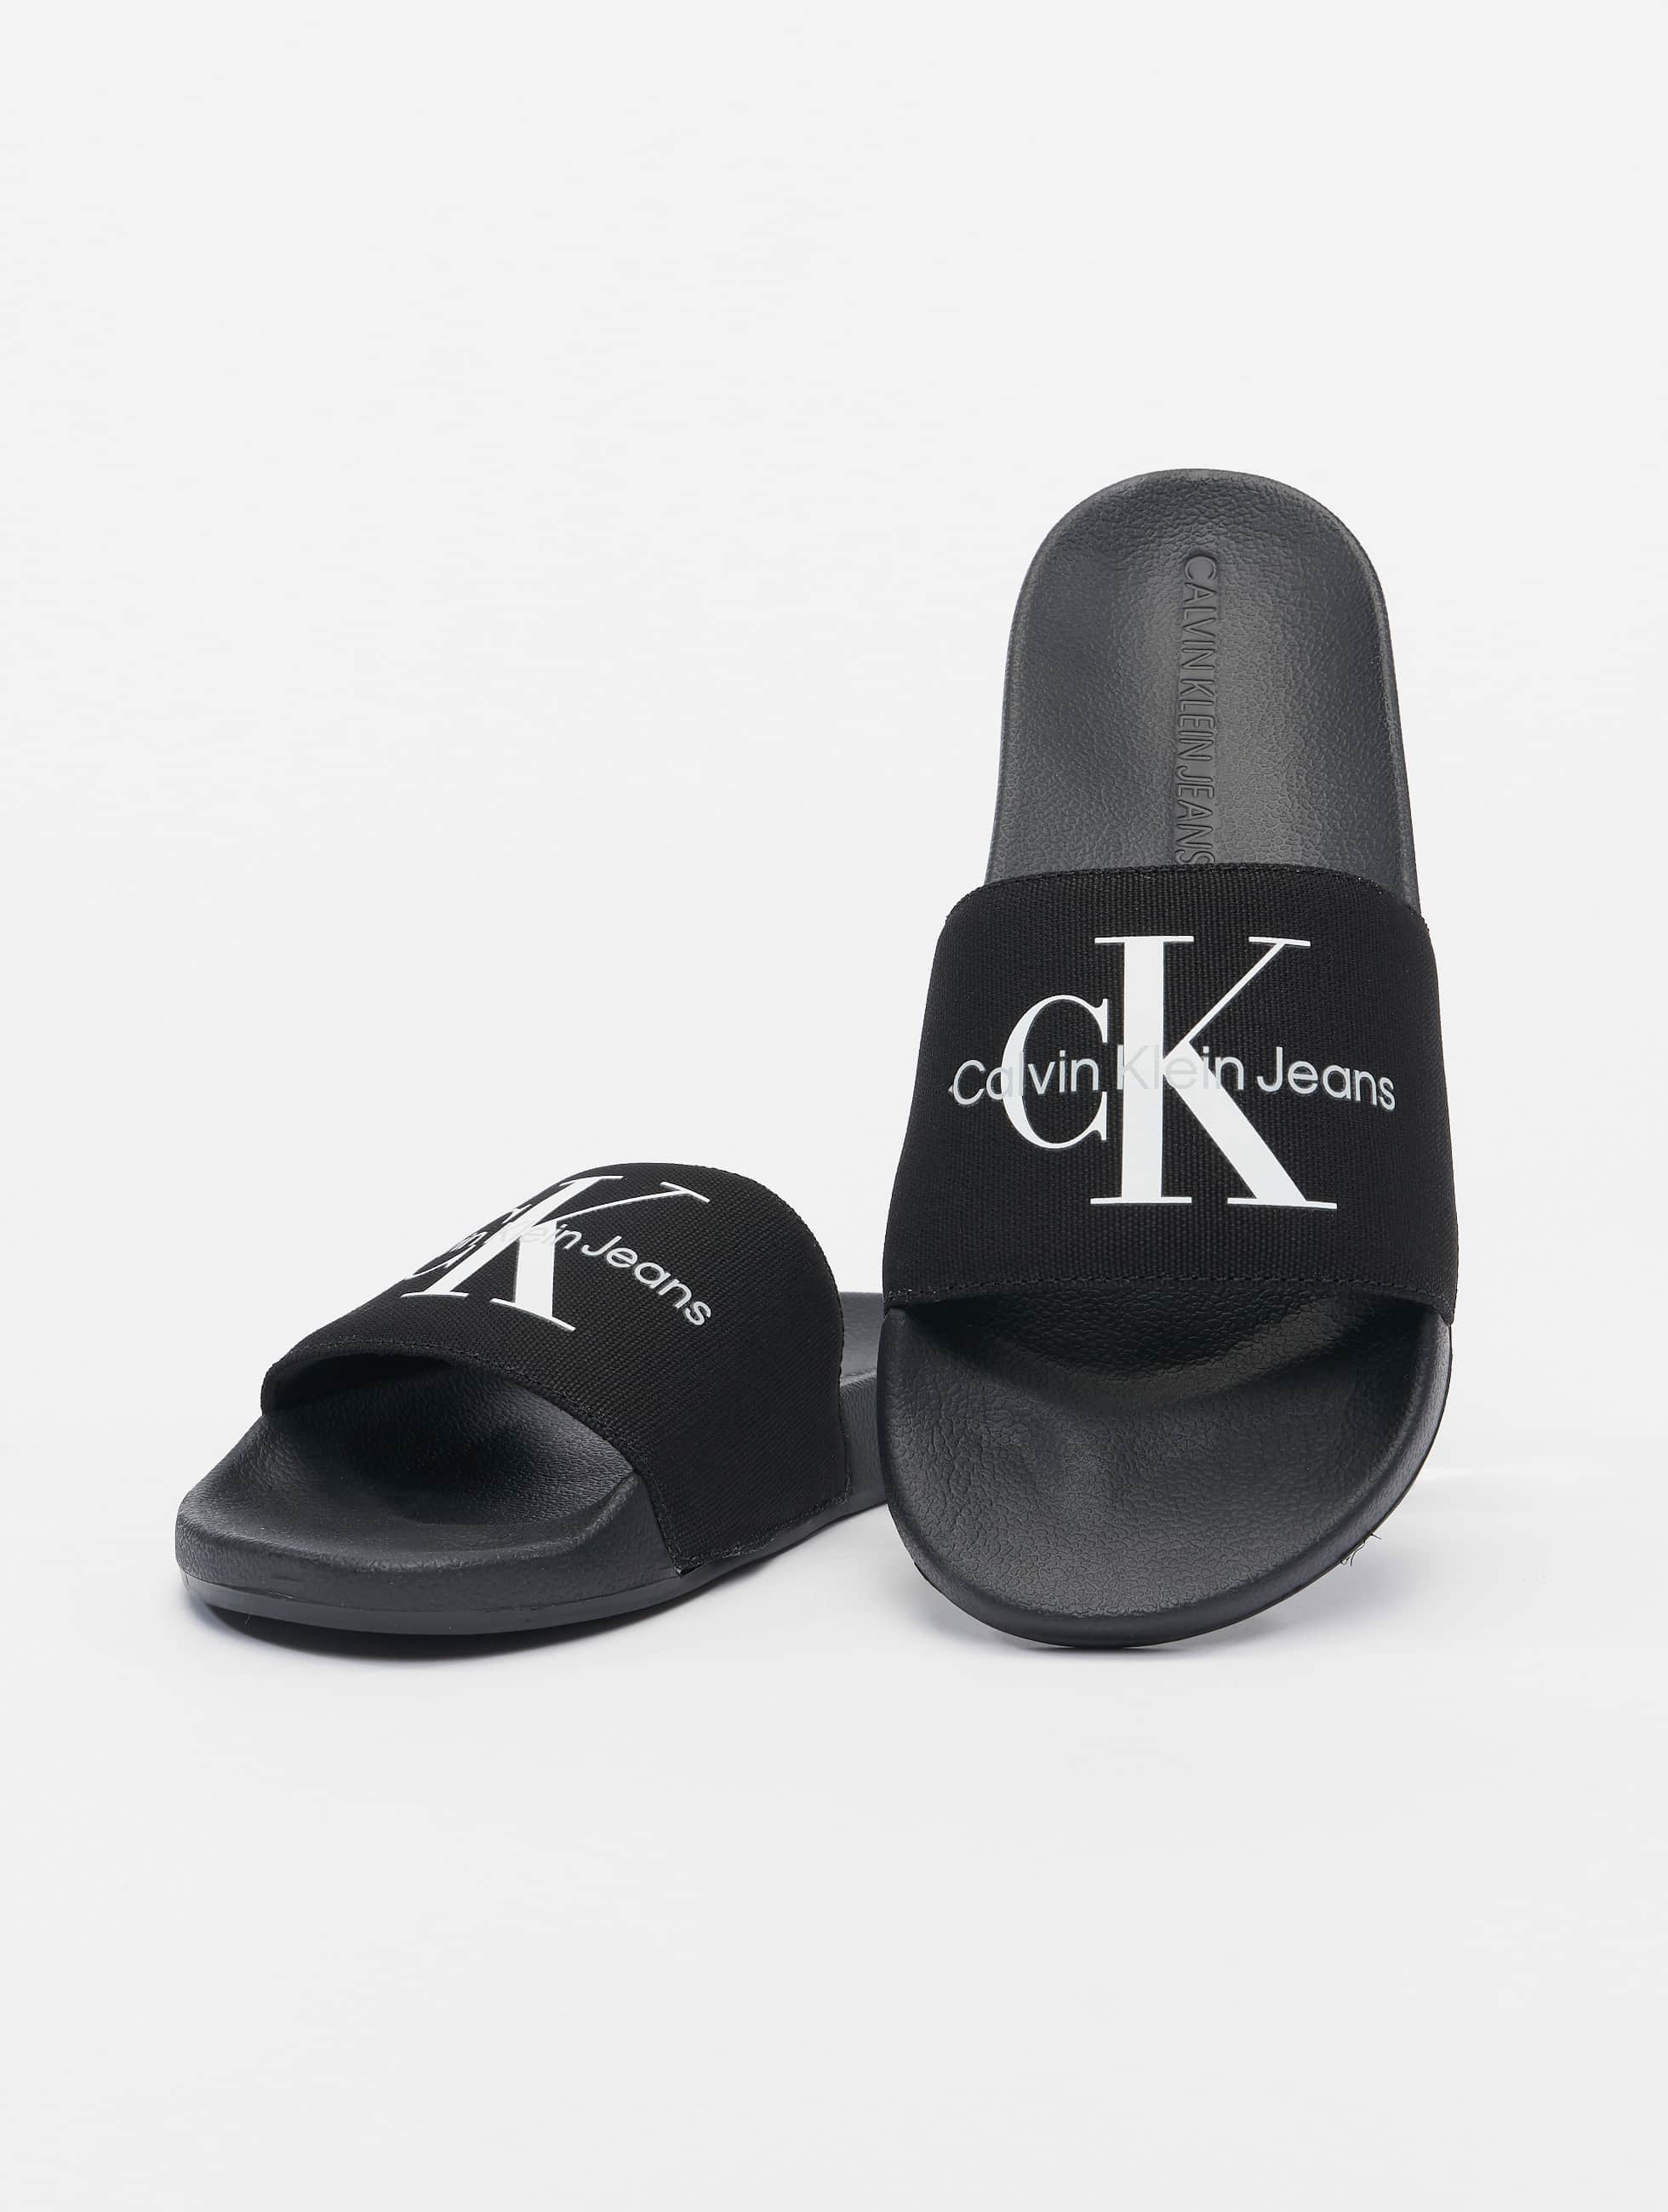 stapel Kan worden berekend Bezwaar Calvin Klein schoen / Slipper/Sandaal Monogram in zwart 973111